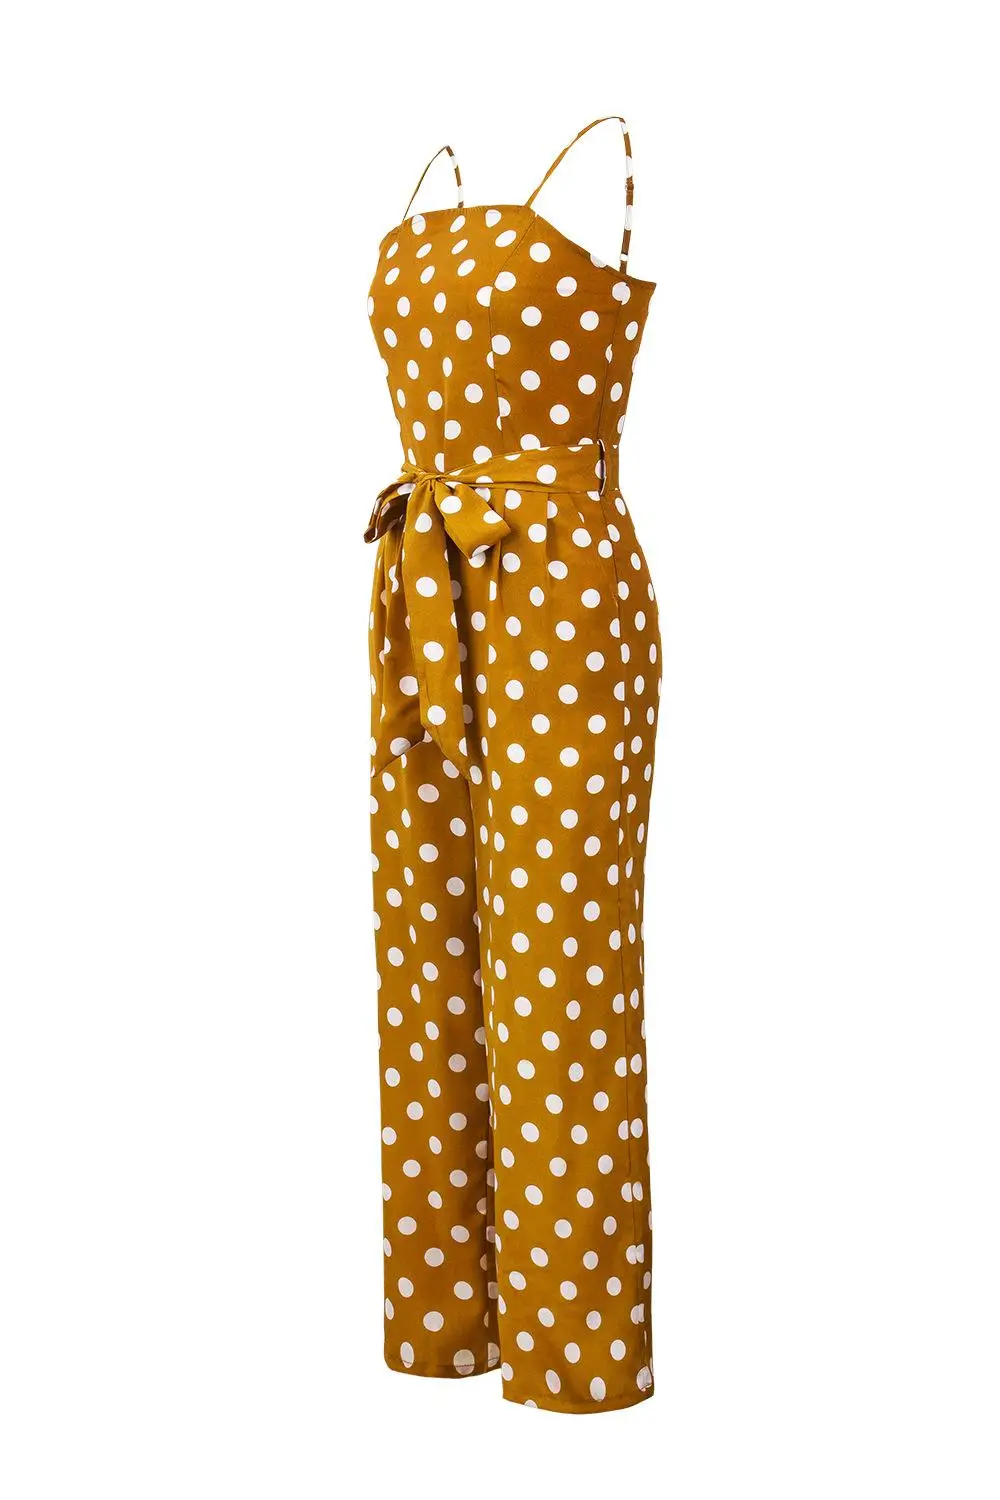 Lossky комбинезон в горошек камзол женские комбинезоны летние тканые без бретелек с поясом широкие брюки повседневные Комбинезоны Femme - Цвет: yellow